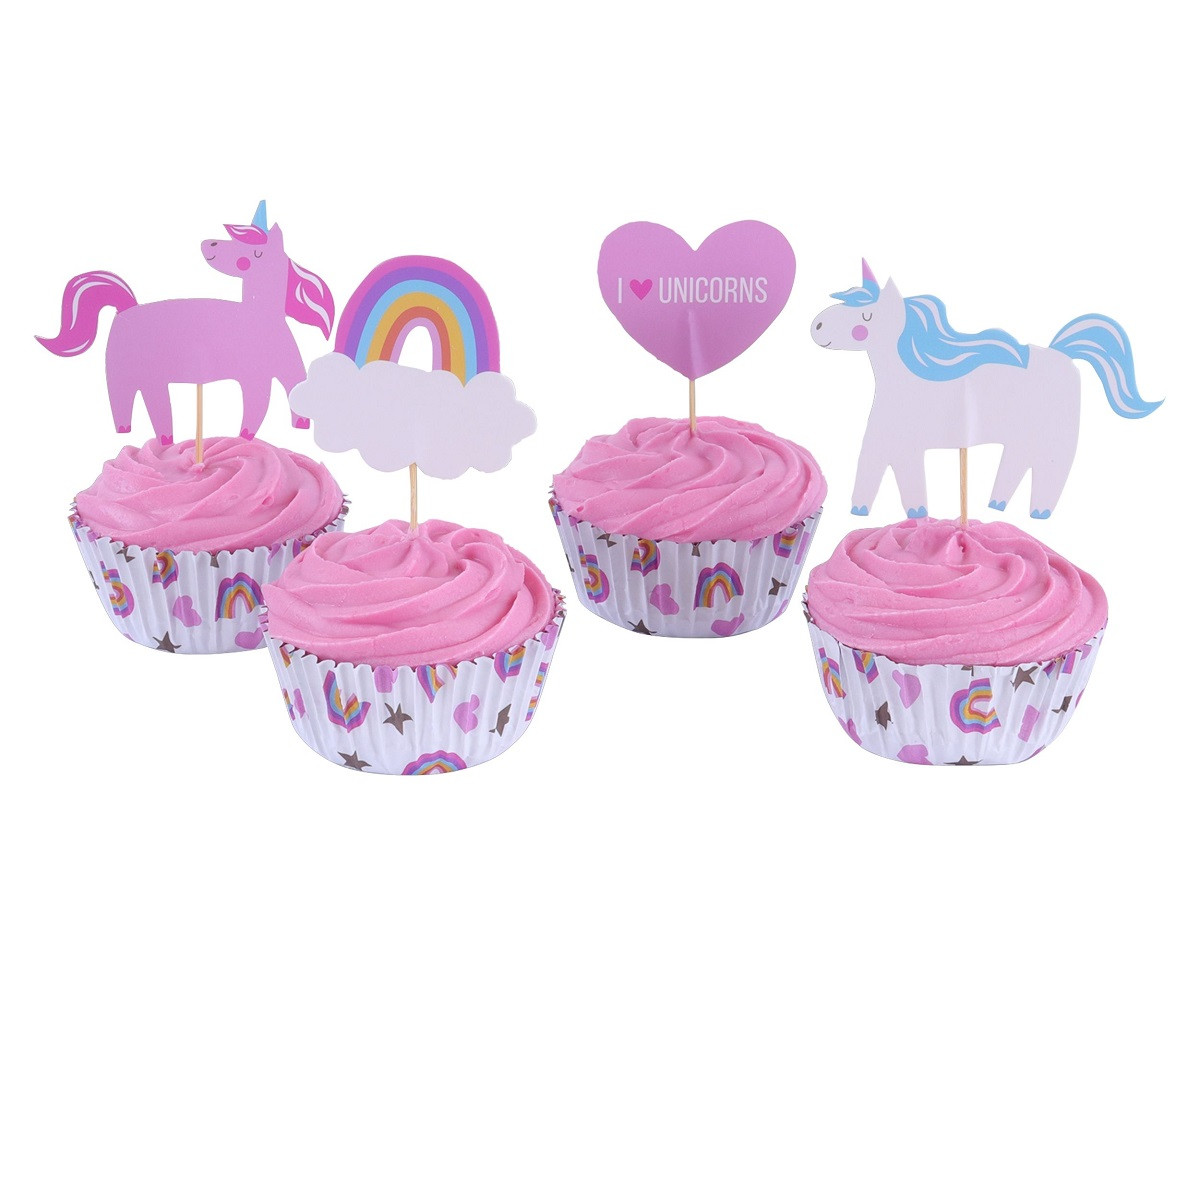 PME Cupcake Set I Love Unicorns 24st.